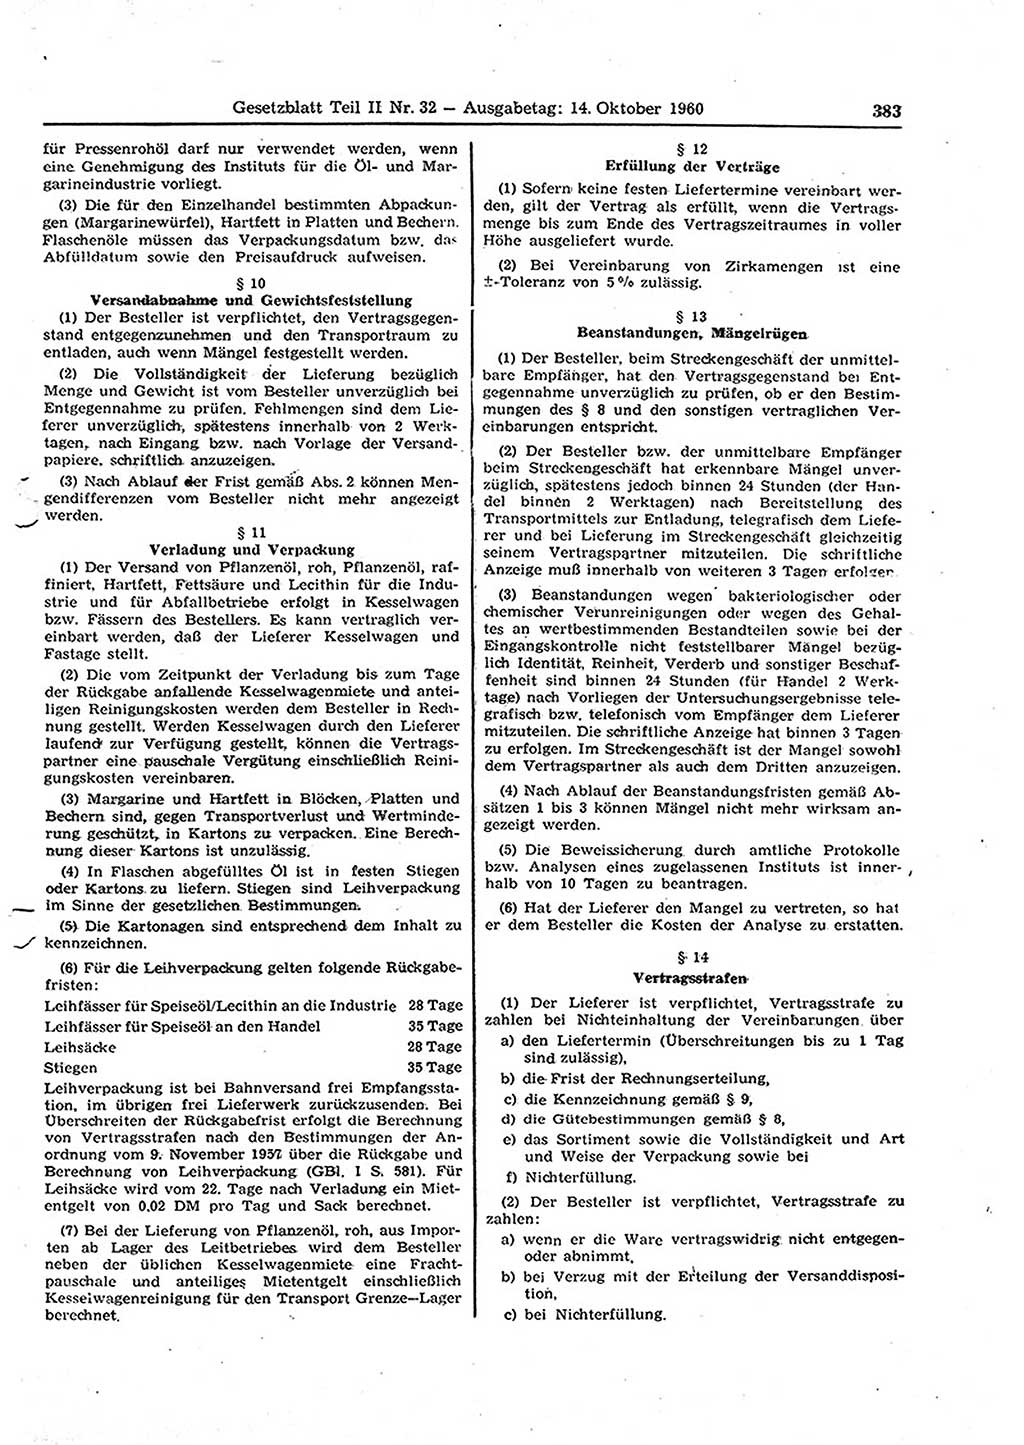 Gesetzblatt (GBl.) der Deutschen Demokratischen Republik (DDR) Teil ⅠⅠ 1960, Seite 383 (GBl. DDR ⅠⅠ 1960, S. 383)